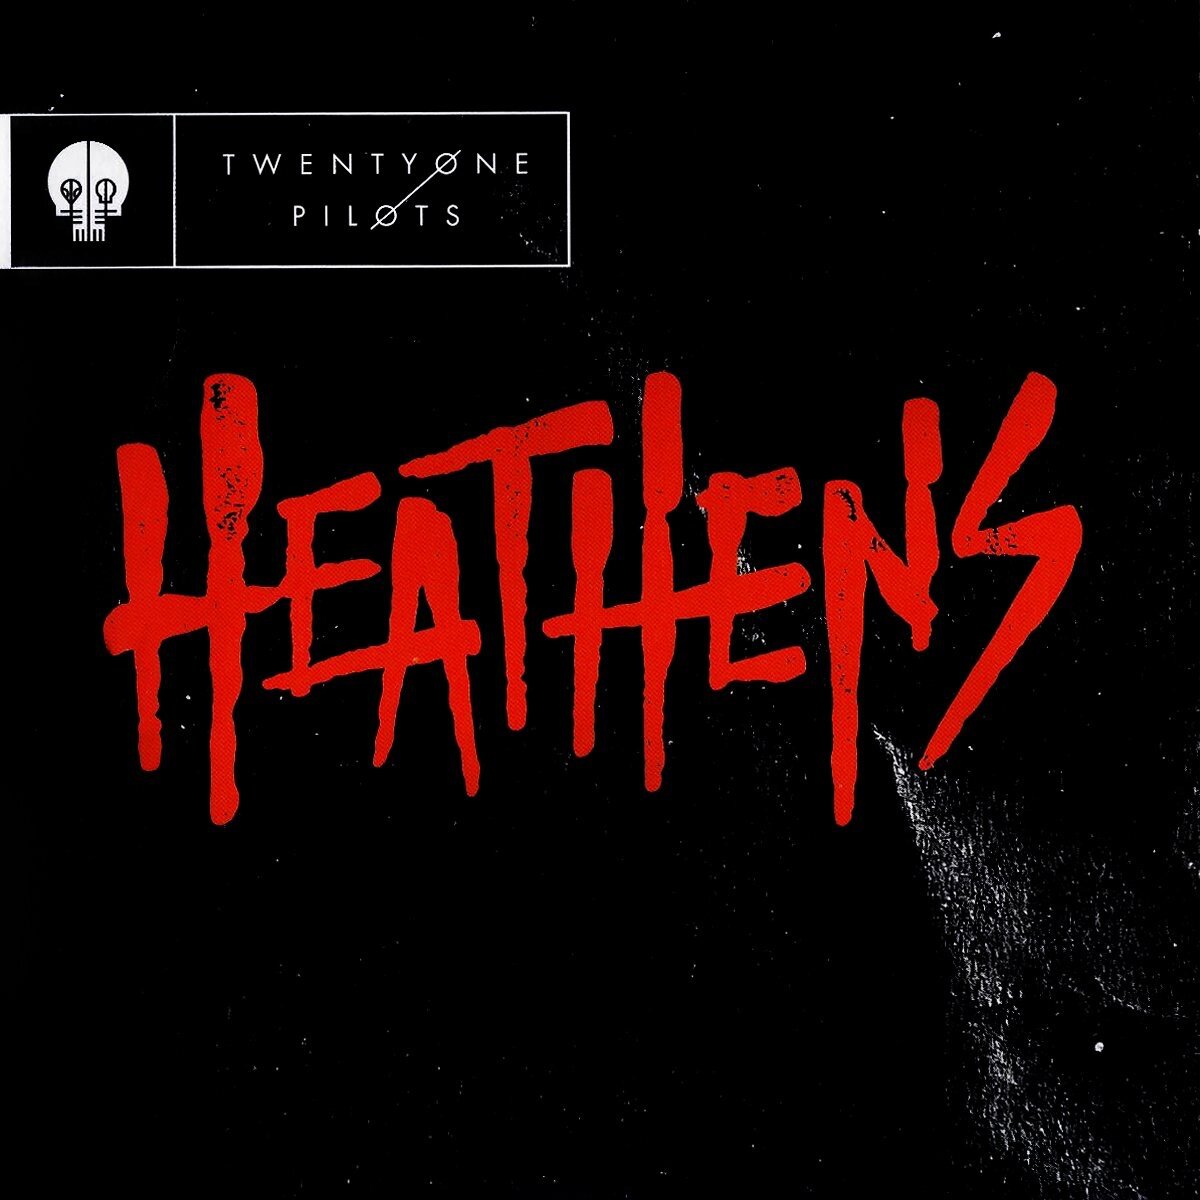 Обложка сингла "Heathens" американского дуэта Twenty One Pilots